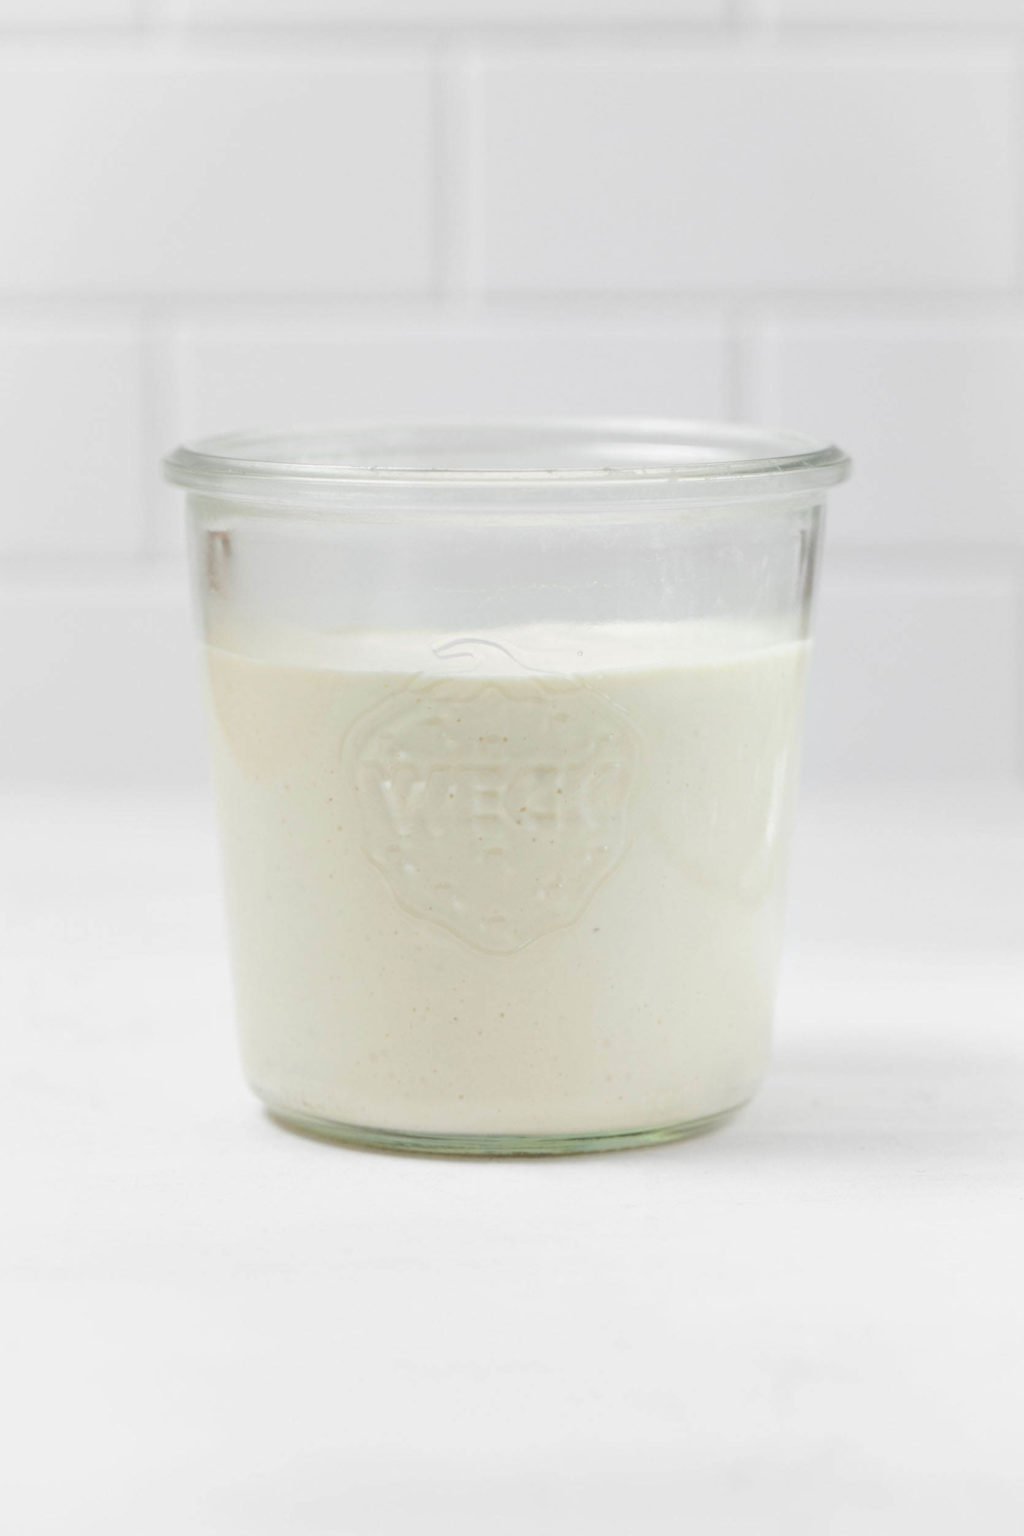 Le bocal en verre contient une crème sure végétalienne blanche crémeuse.  Il repose sur une surface blanche.